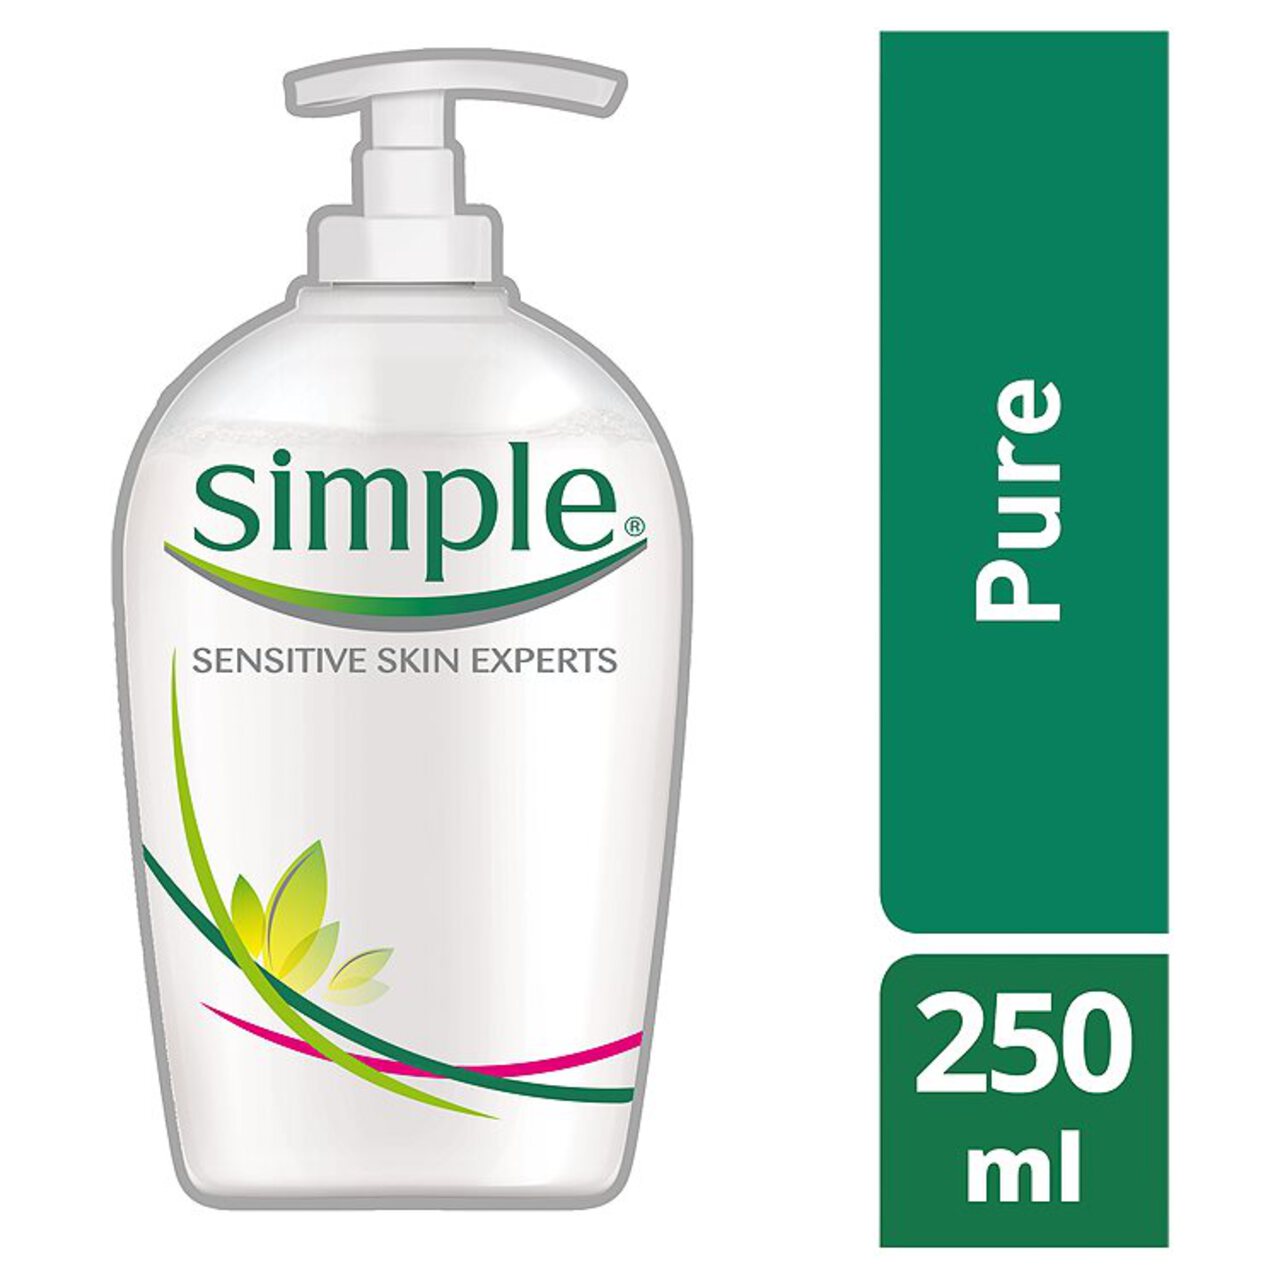 Simple Pure Hand Wash 250ml